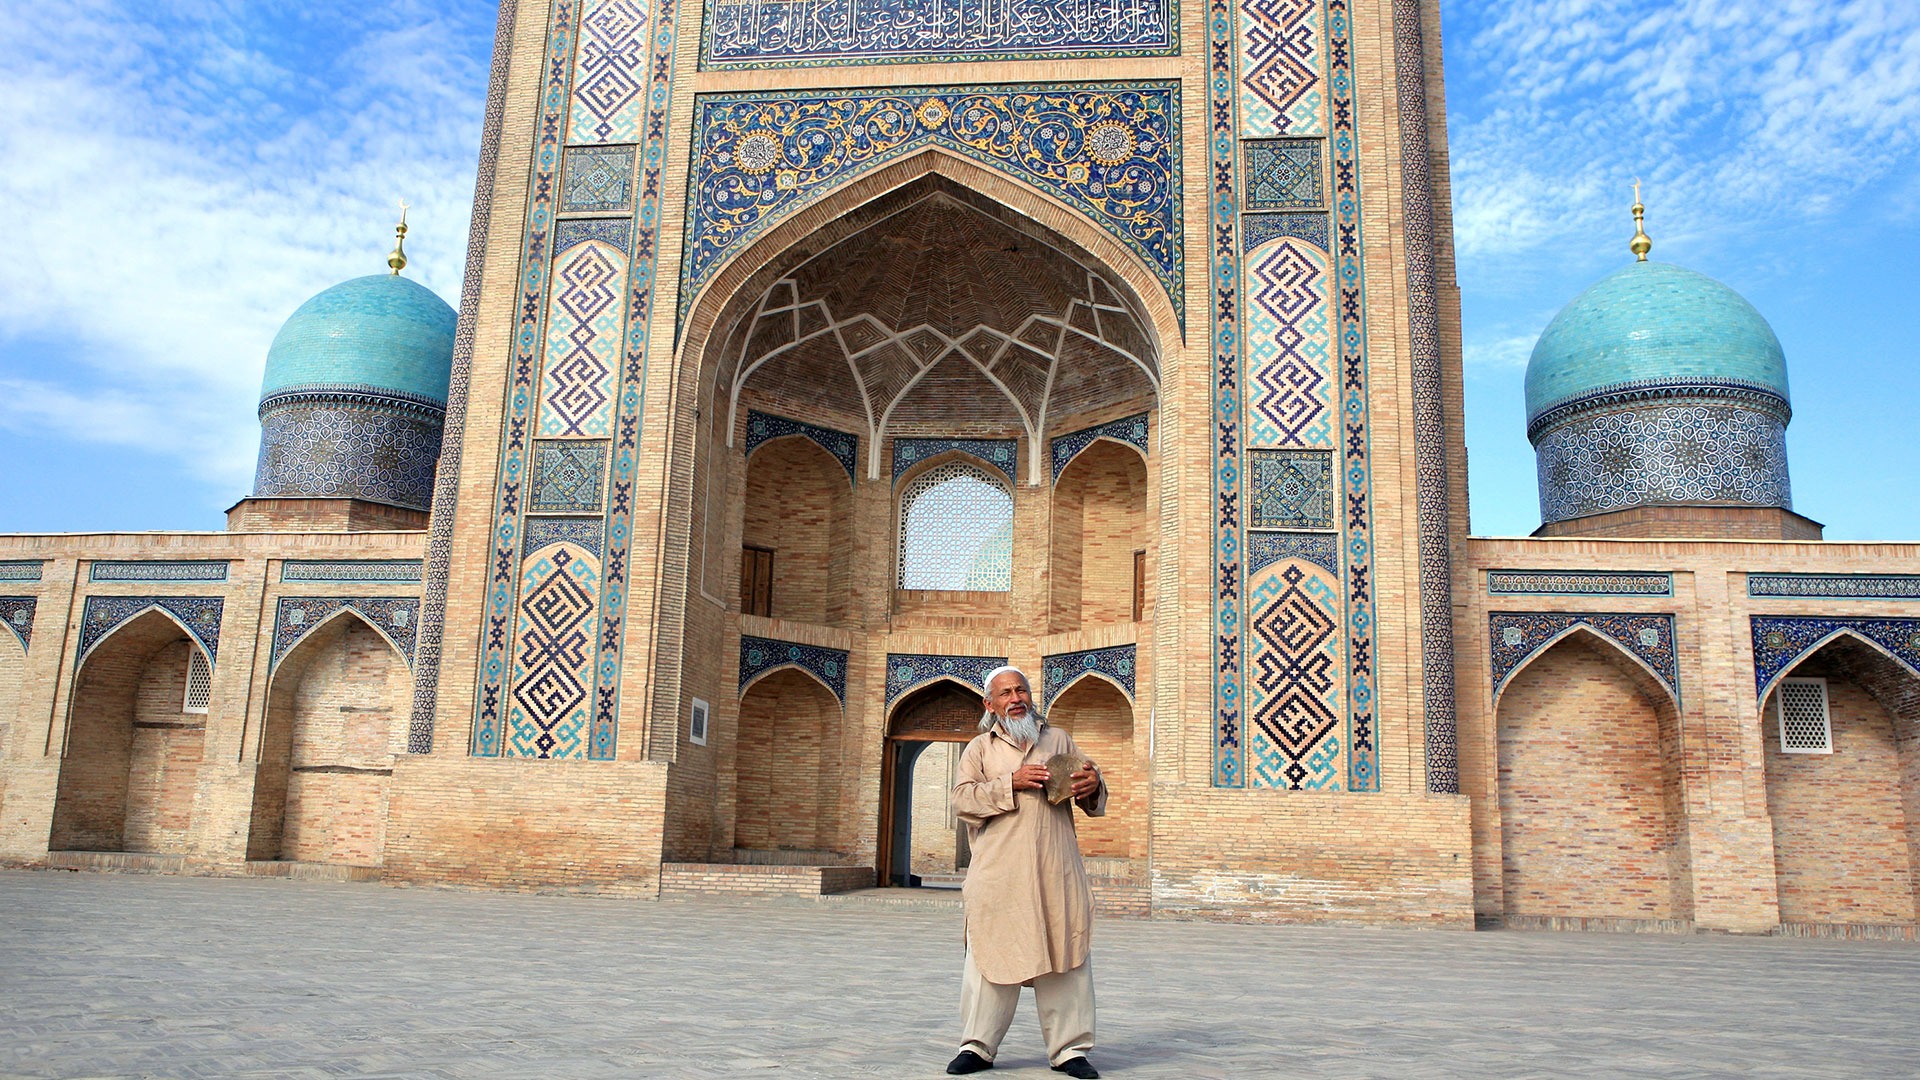 Uzbek man singing and dancing in front of mosque in Uzbekistan